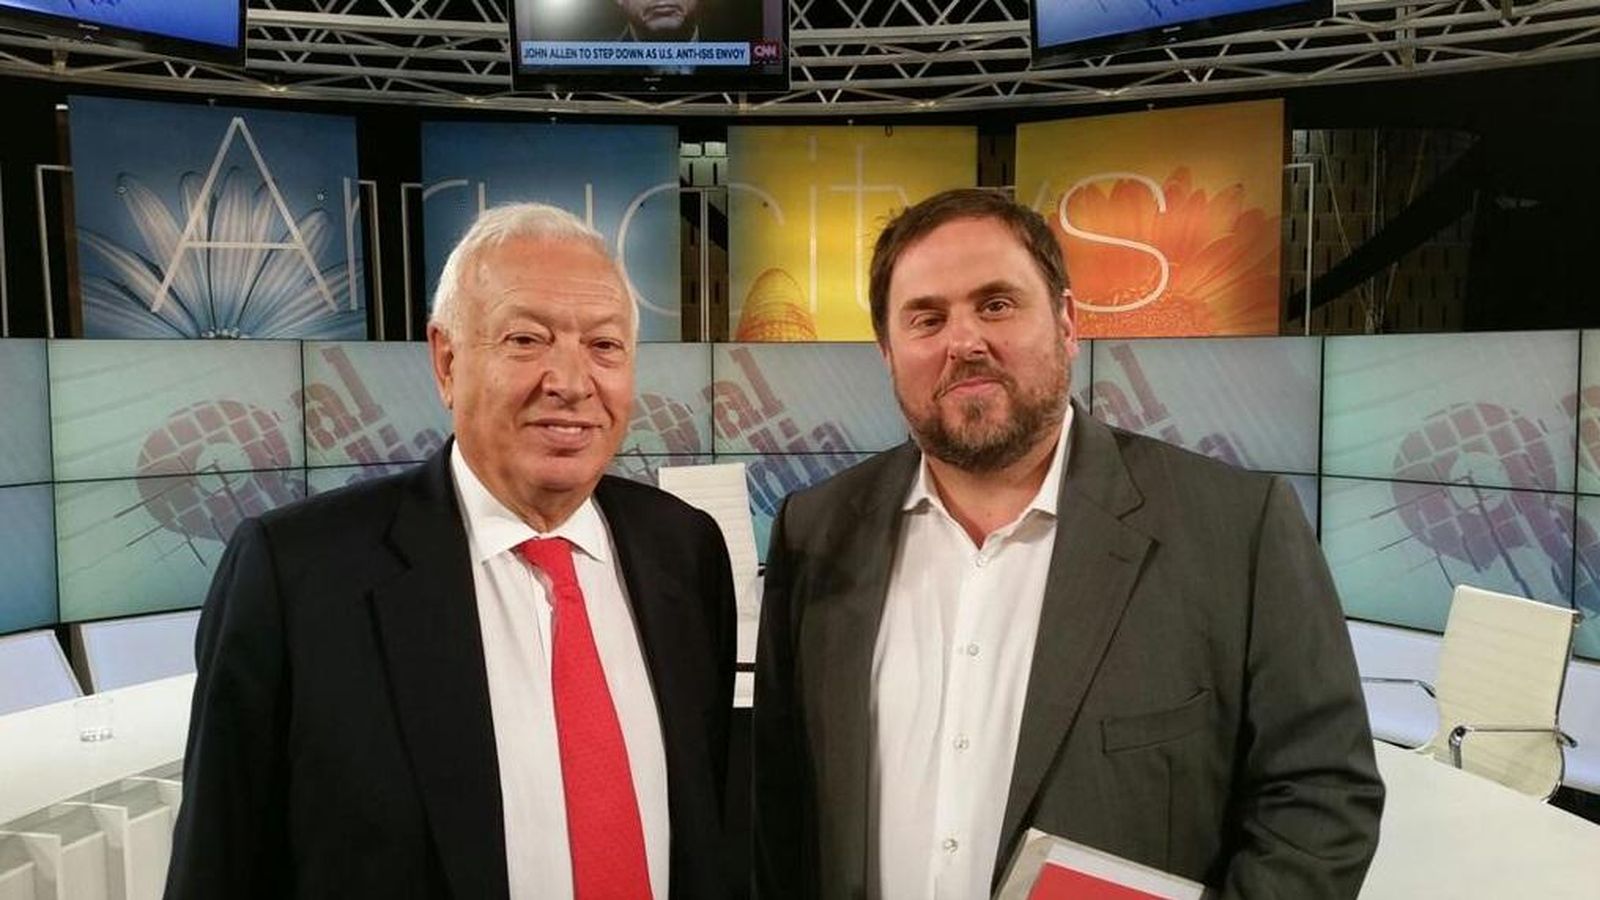 Foto: El ministro Margallo y el líder de Esquerra Republicana antes de dar comienzo al debate. (TV8)